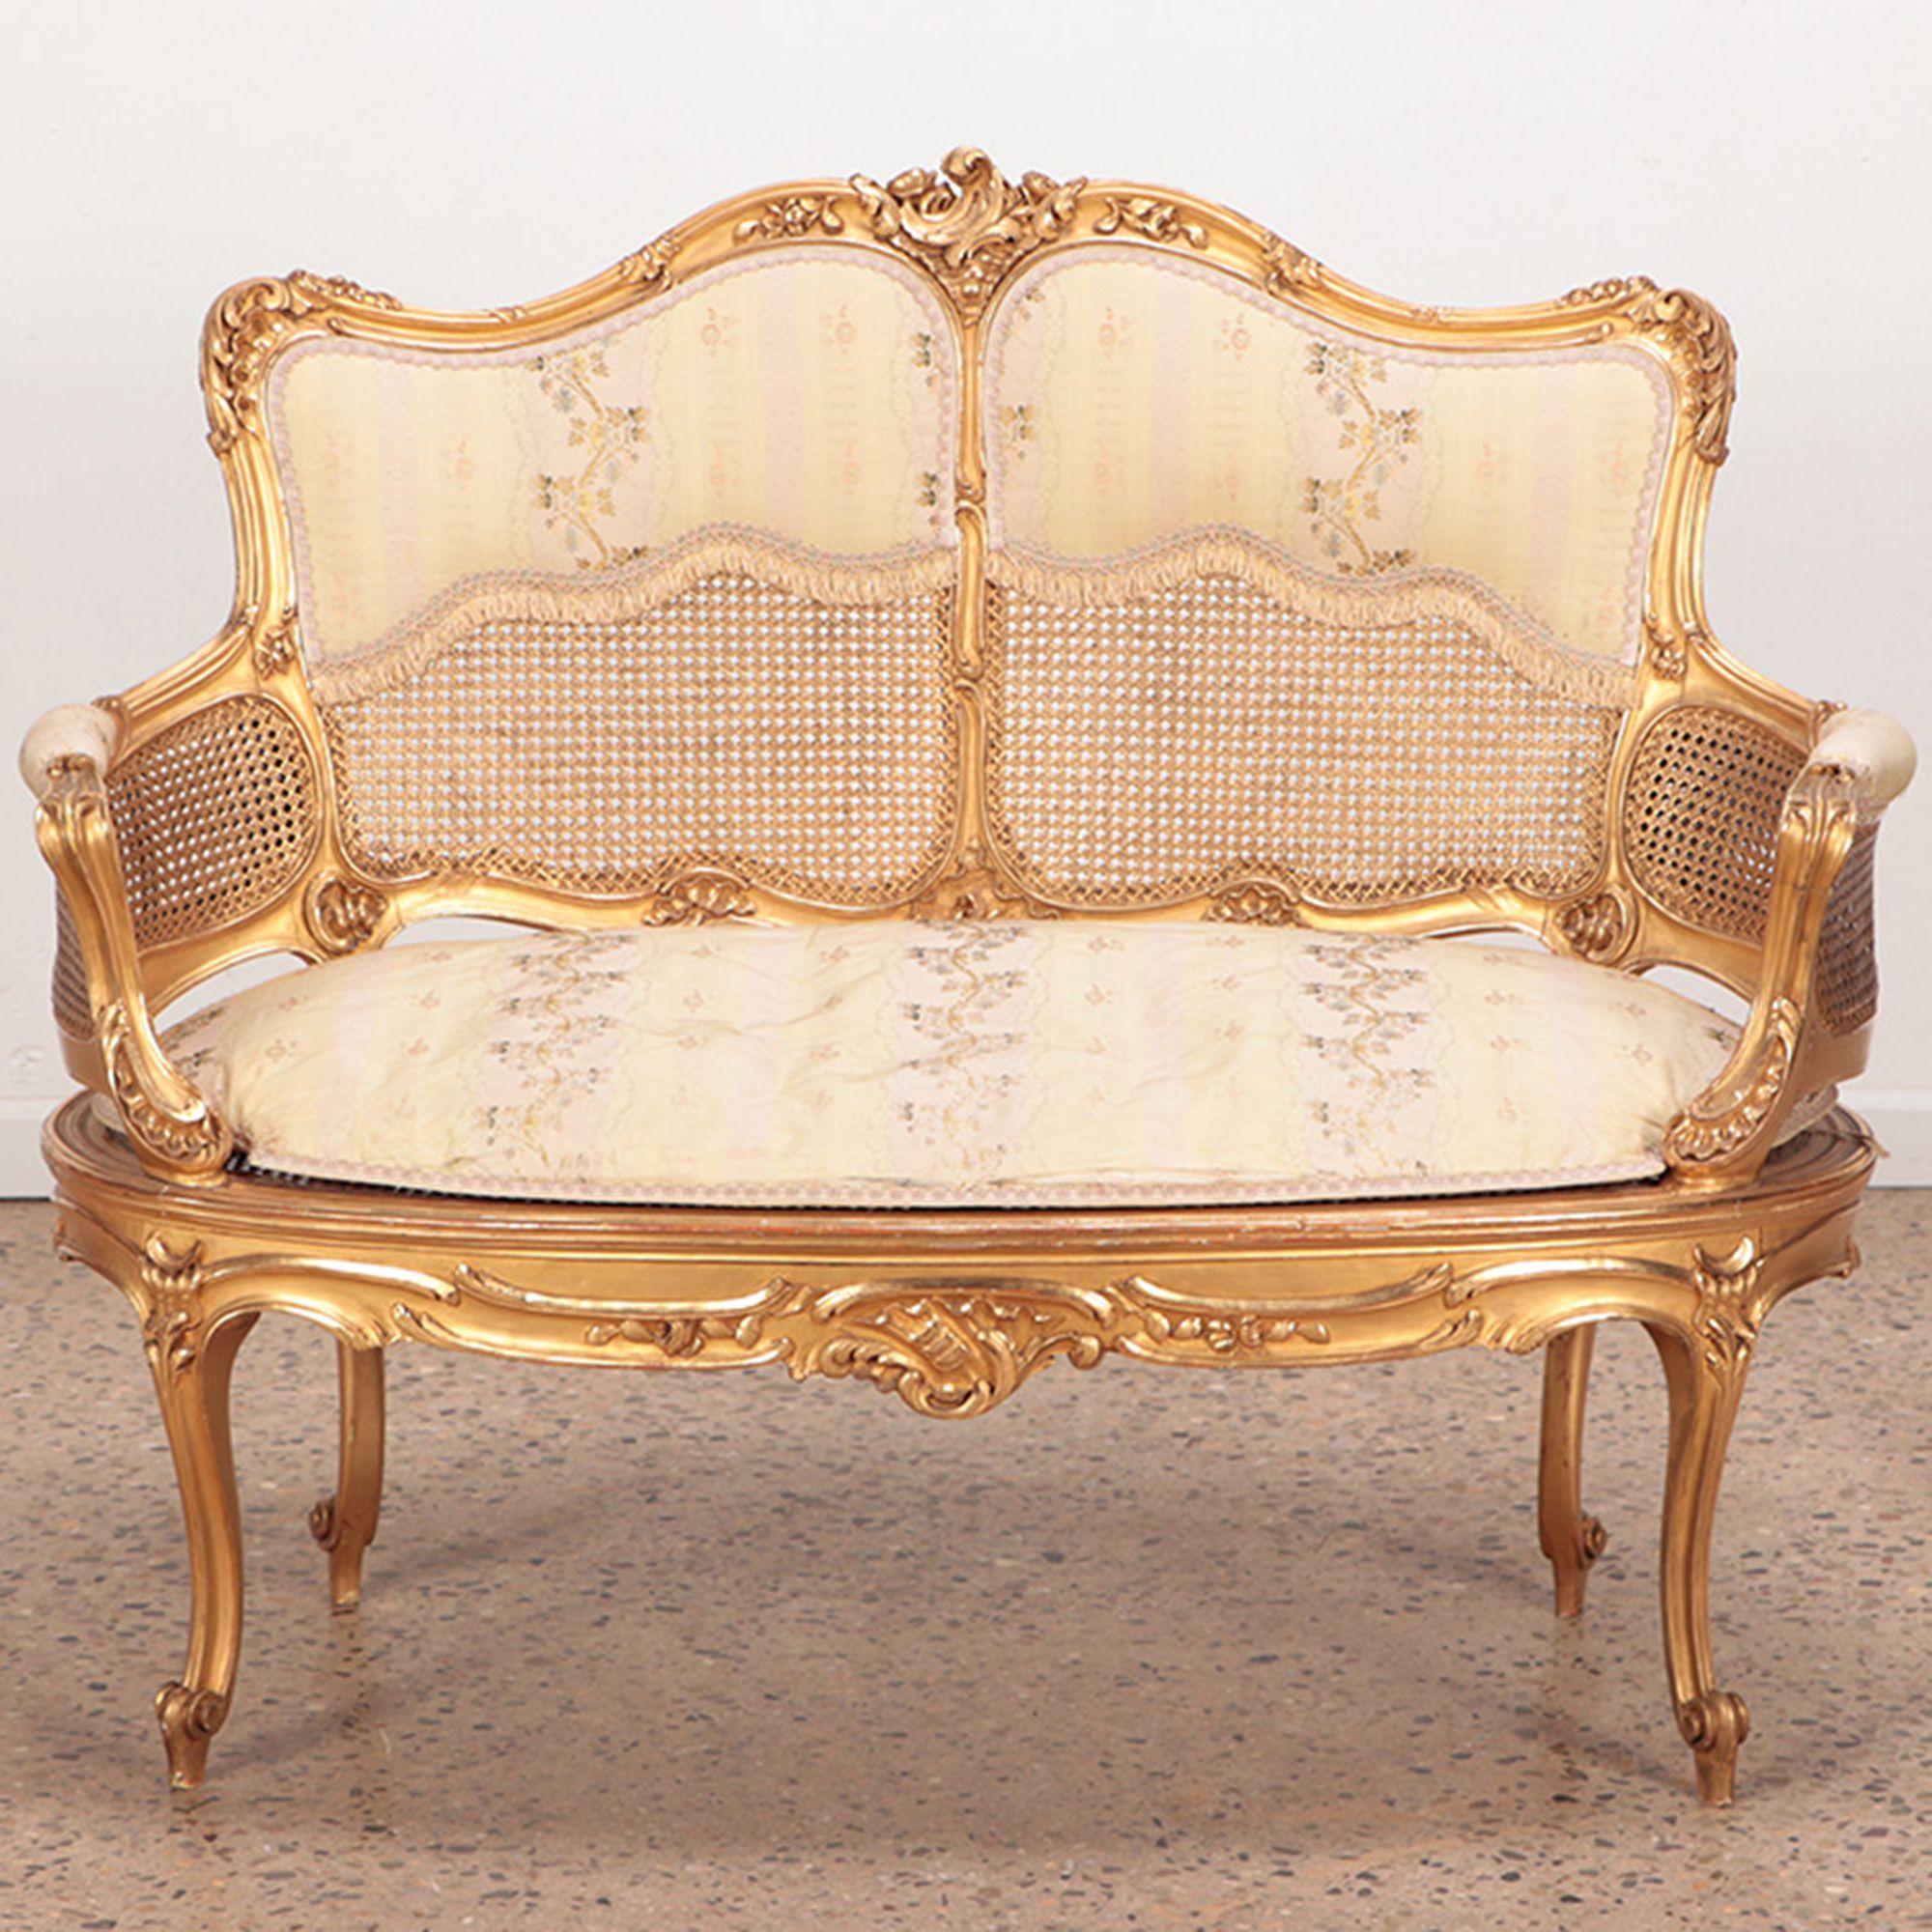 Canapé français de style Louis XV en bois doré et sculpté, finition dorée d'origine, vers 1900.